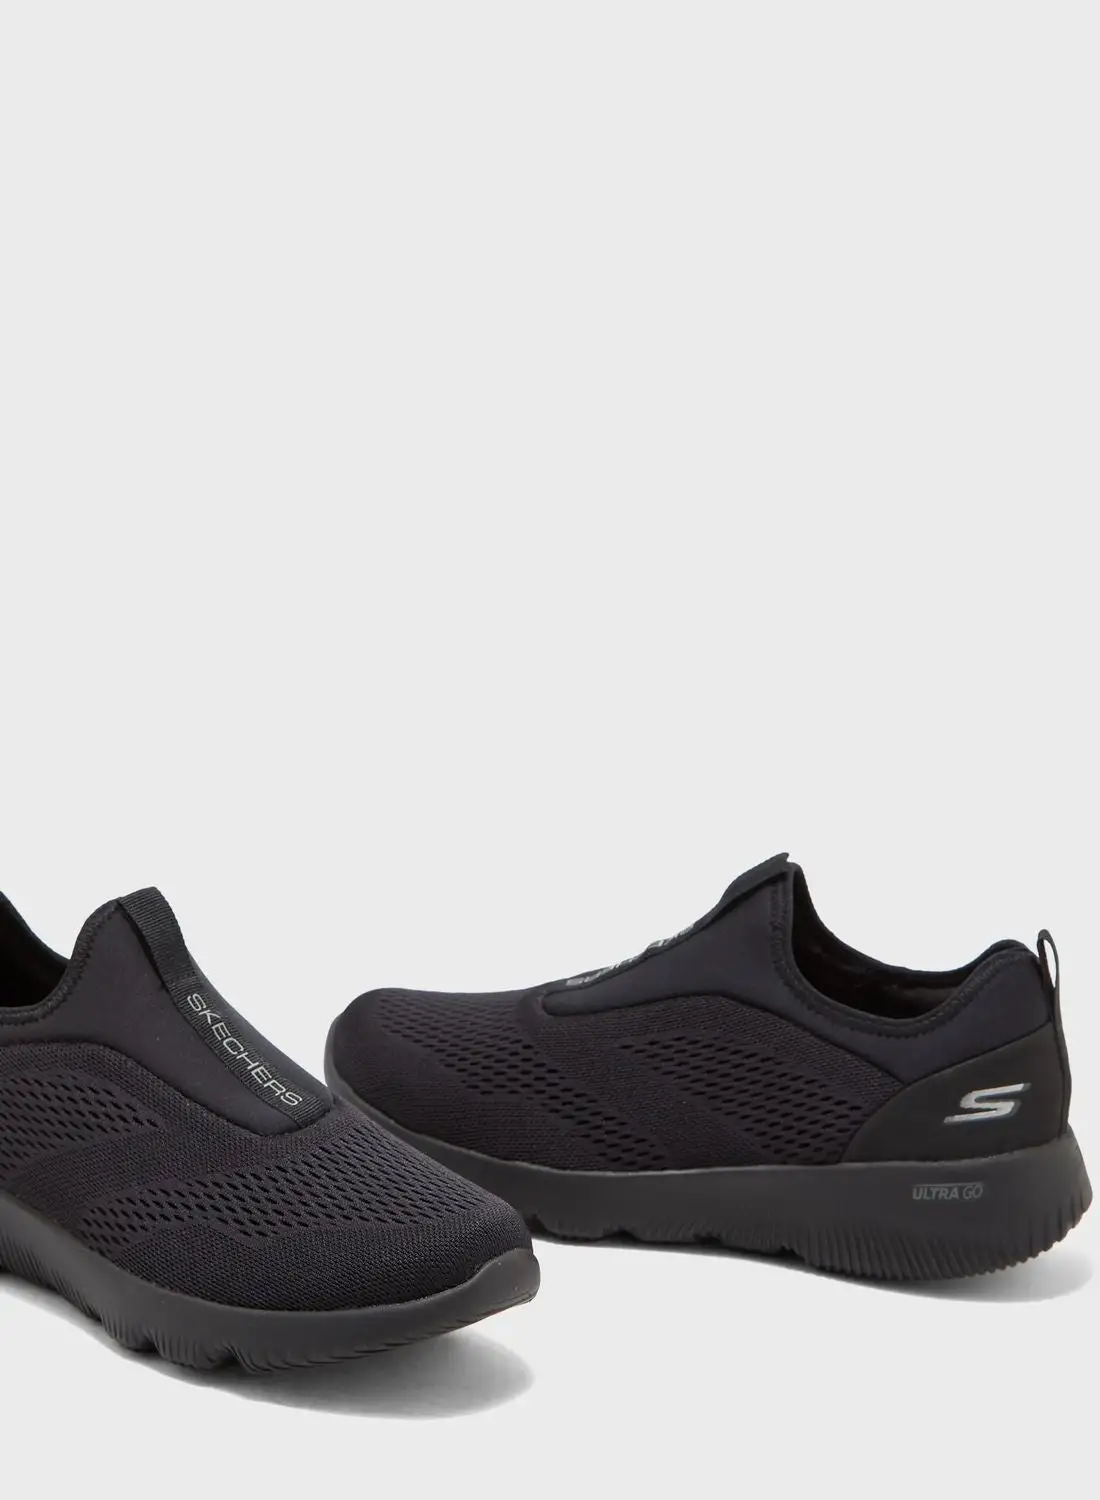 حذاء سكيتشرز فوكس سهل الارتداء باللون الأسود